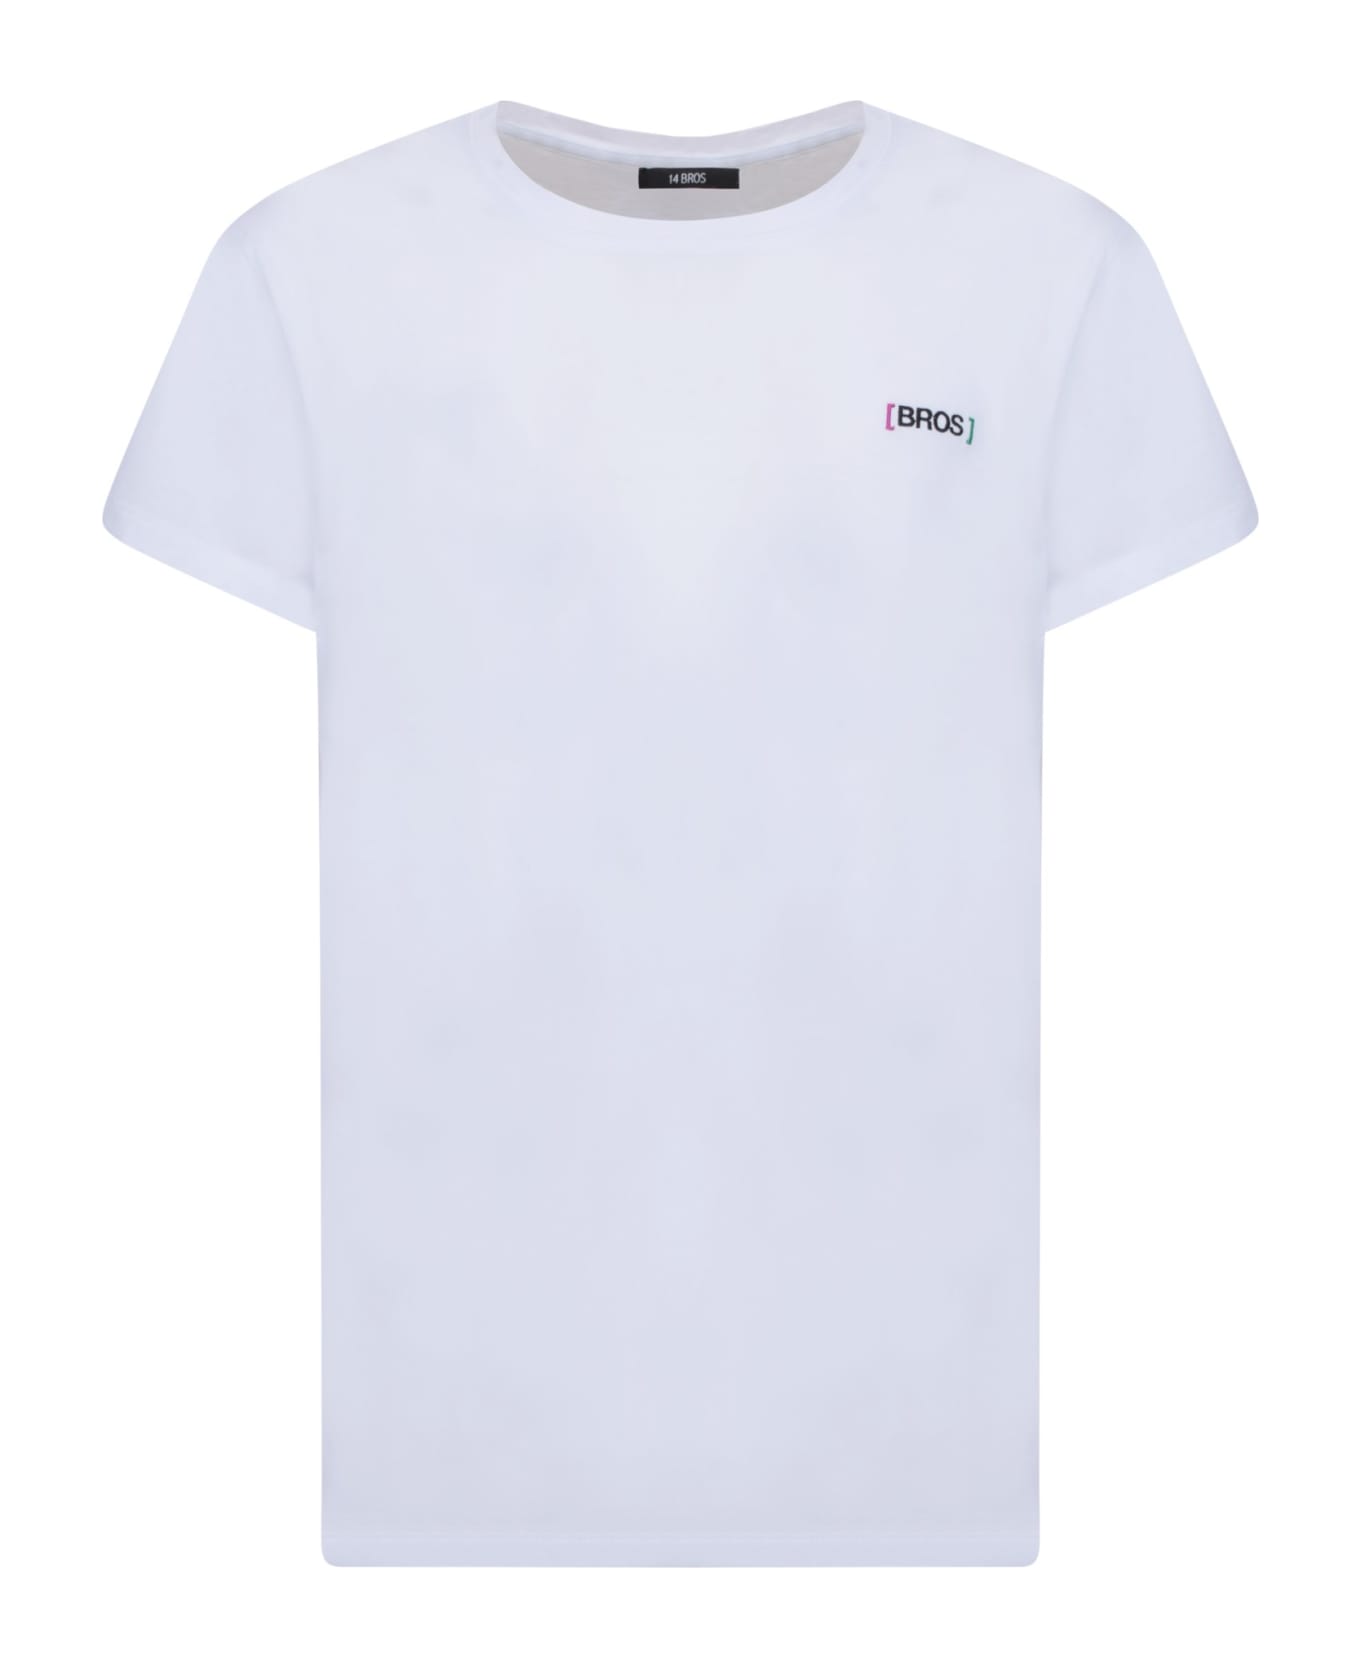 14 Bros Chest Logo White T-shirt - White